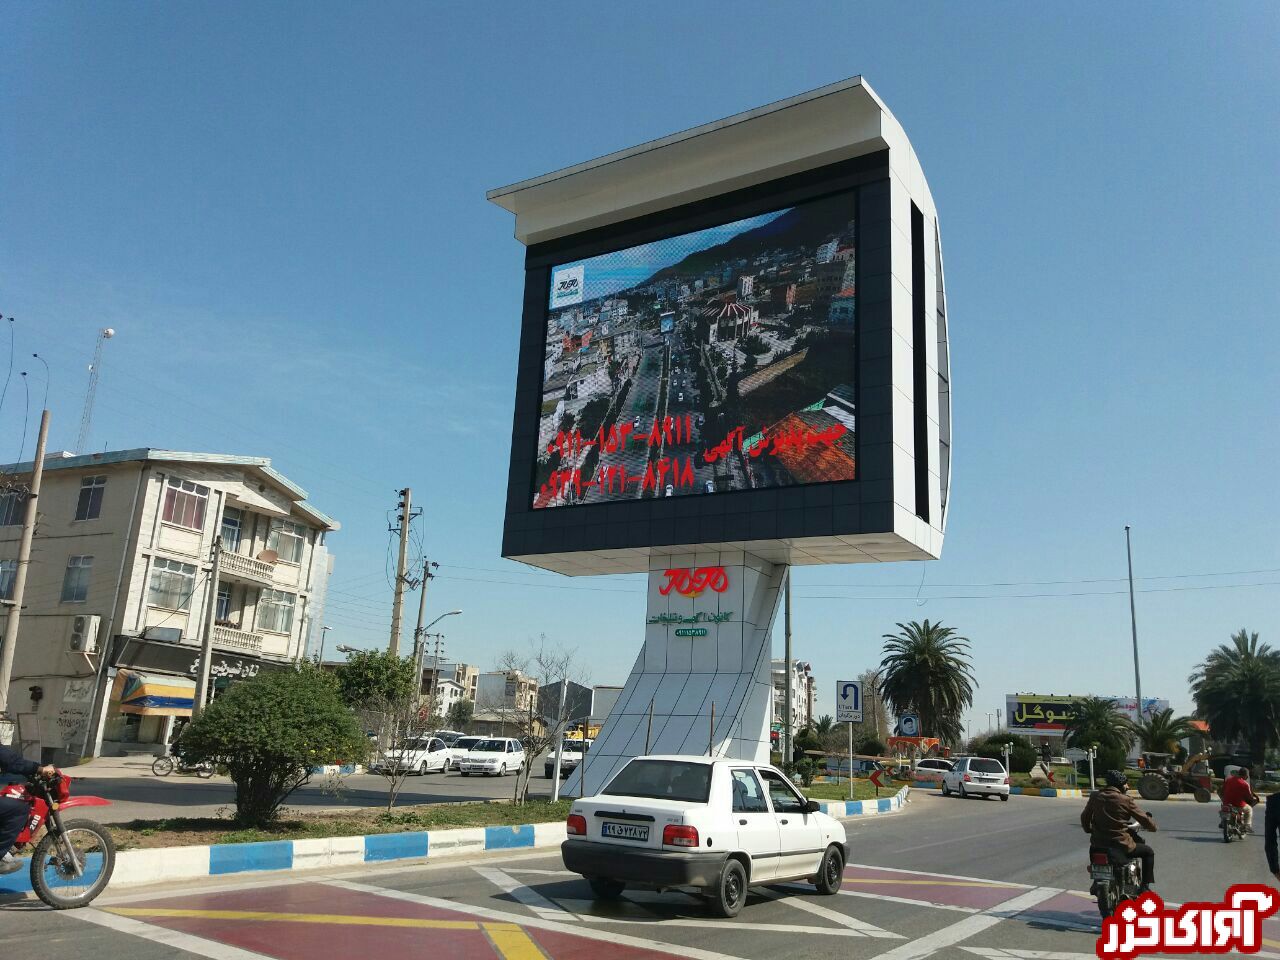 بزرگترین تلویزیون شهری مازندران با اشتغالزایی 50 نفر در بهشهر افتتاح شد